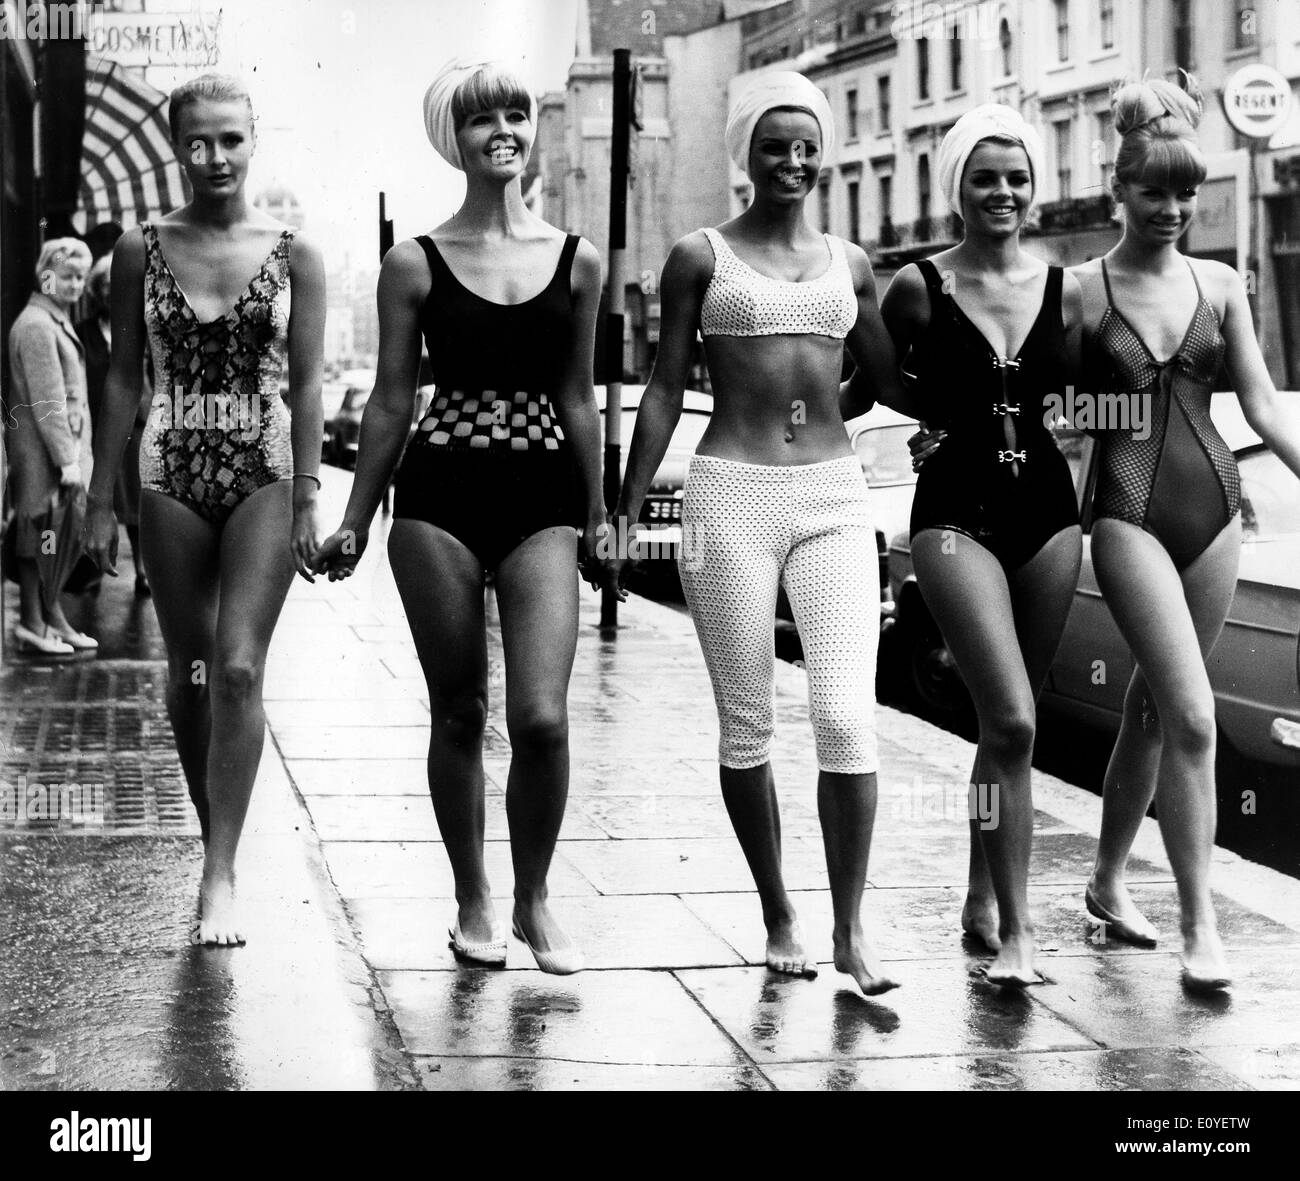 01 janv., 1970 - Londres, Angleterre, Royaume-Uni - Photo : 1960 des années 70. Jeunes filles posant en bikini dans des défilés de mode, les pousses et sur les plages de bronzage. Selon la version officielle, le bikini moderne a été inventé par l'ingénieur français Louis et Rekard Fashion designer Jacques Heim à Paris en 1946 et a présenté le 5 juillet à un défilé à Piscine Molitor à Paris. C'était un bikini avec un g-string dos Banque D'Images